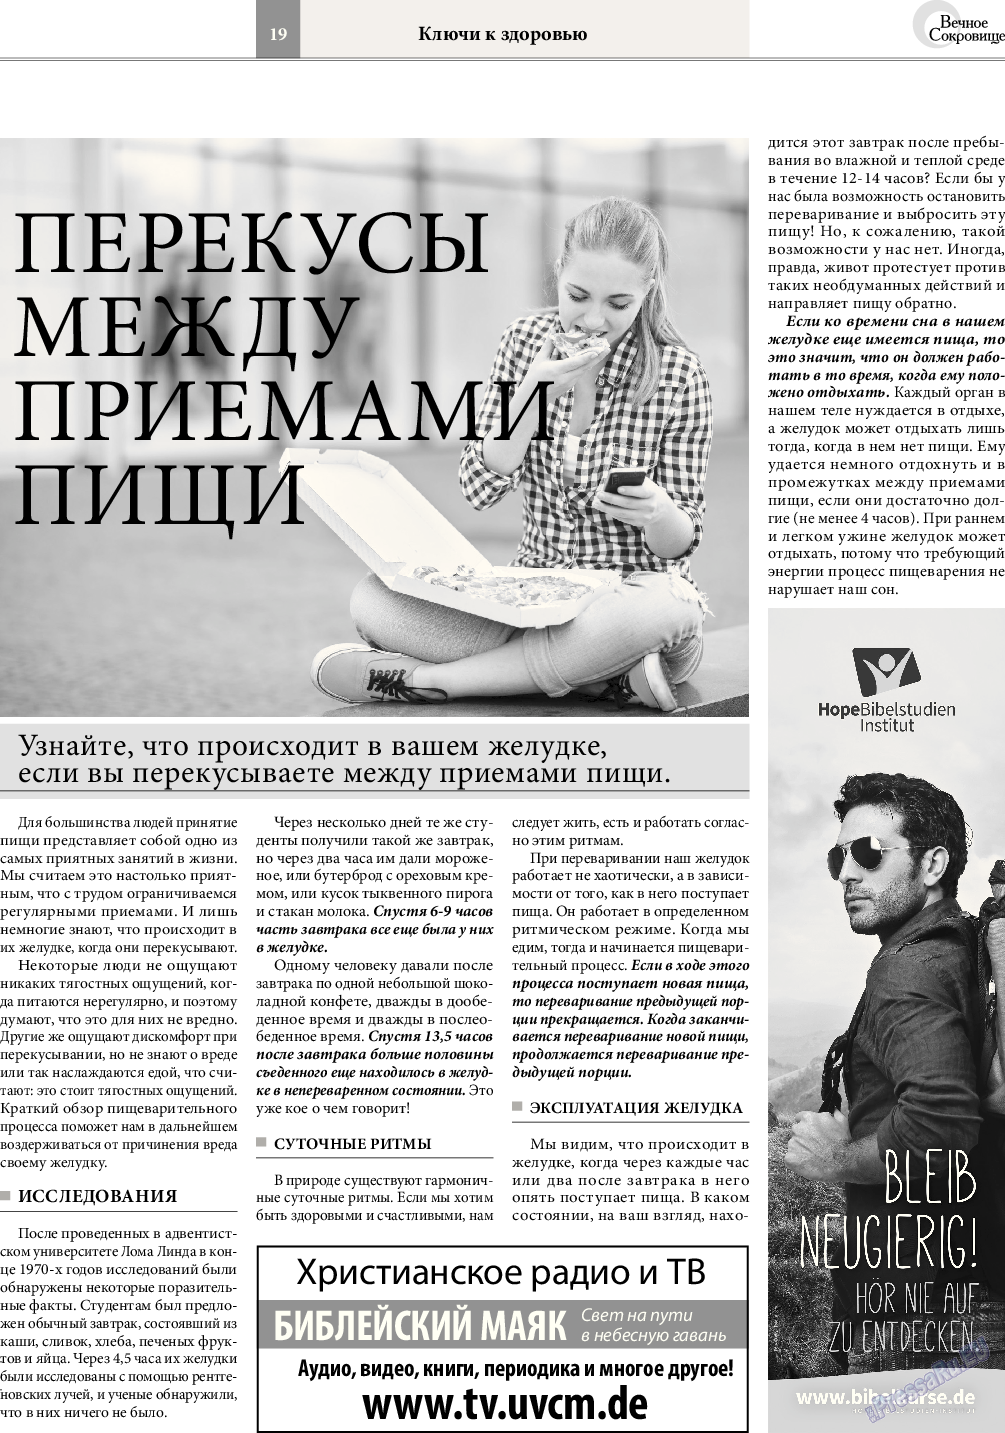 Вечное сокровище, газета. 2017 №1 стр.19